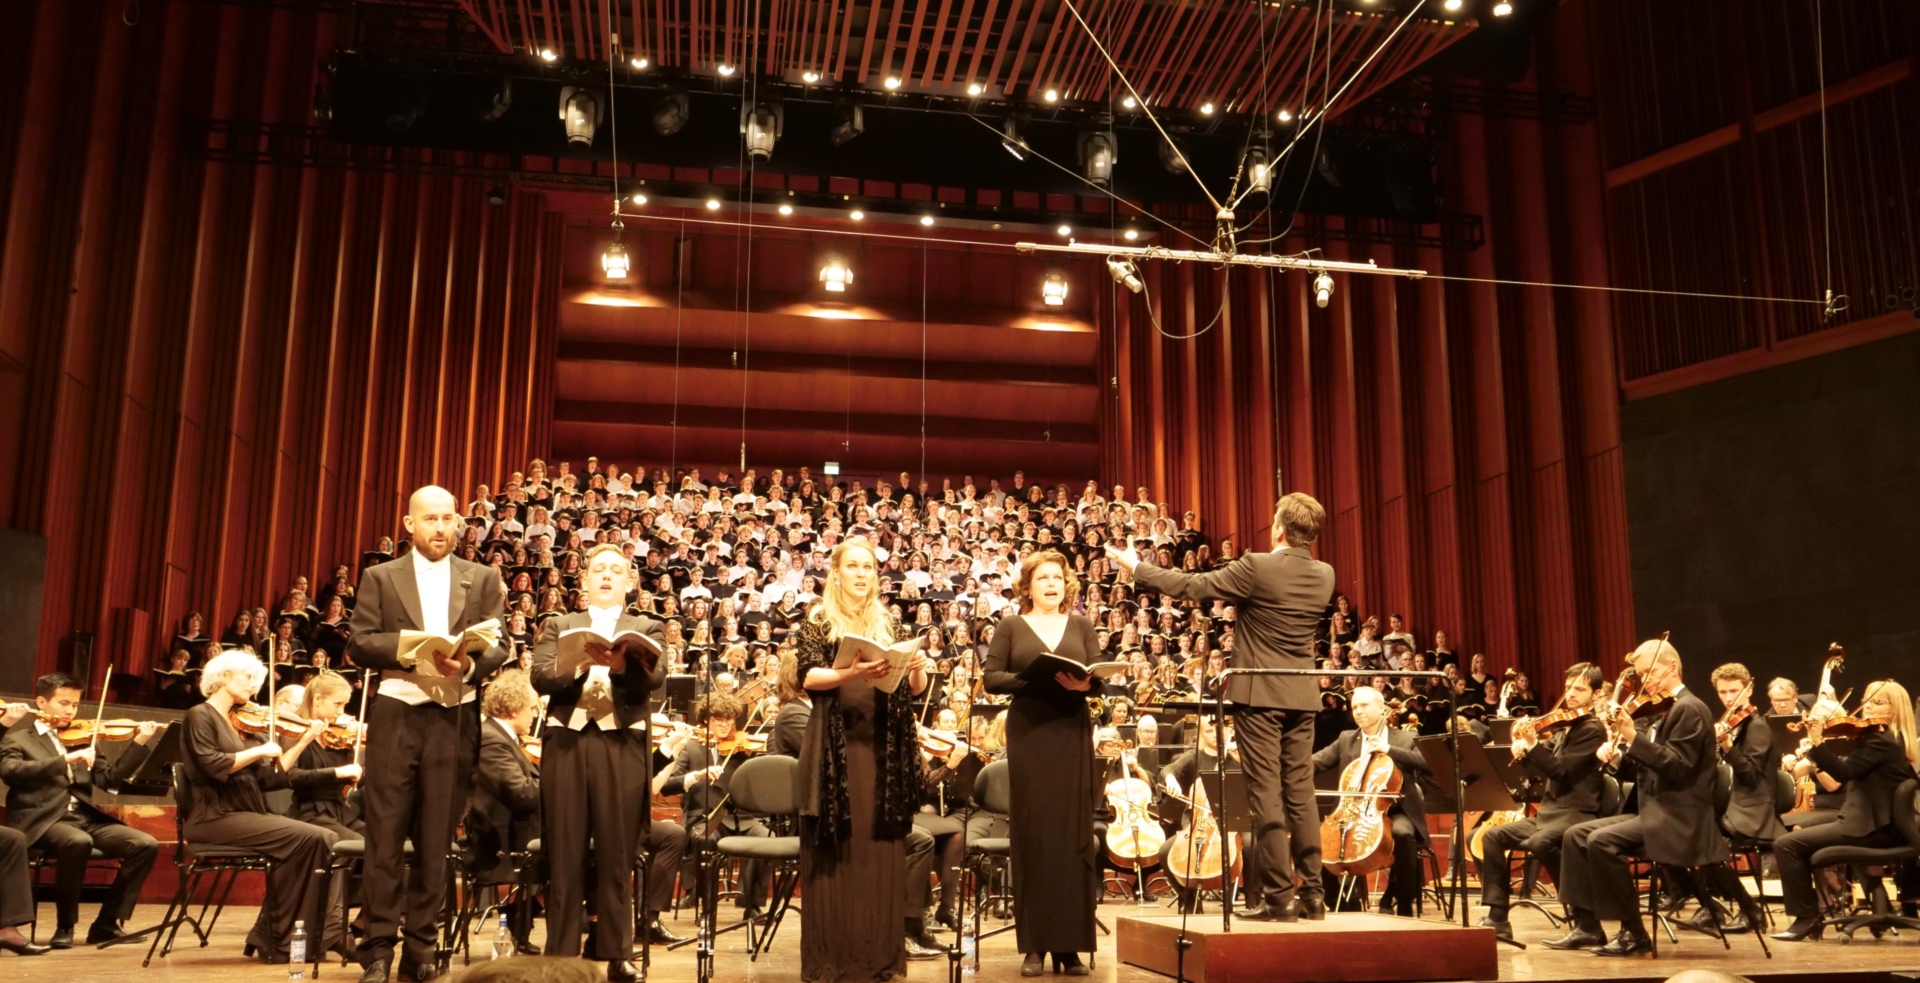 Storsatsning: KORK og de tre videregående skolene med musikk, dans og drama, gikk sammen om å fremføre Verdis Requiem i Oslo Konserthus nå i februar.